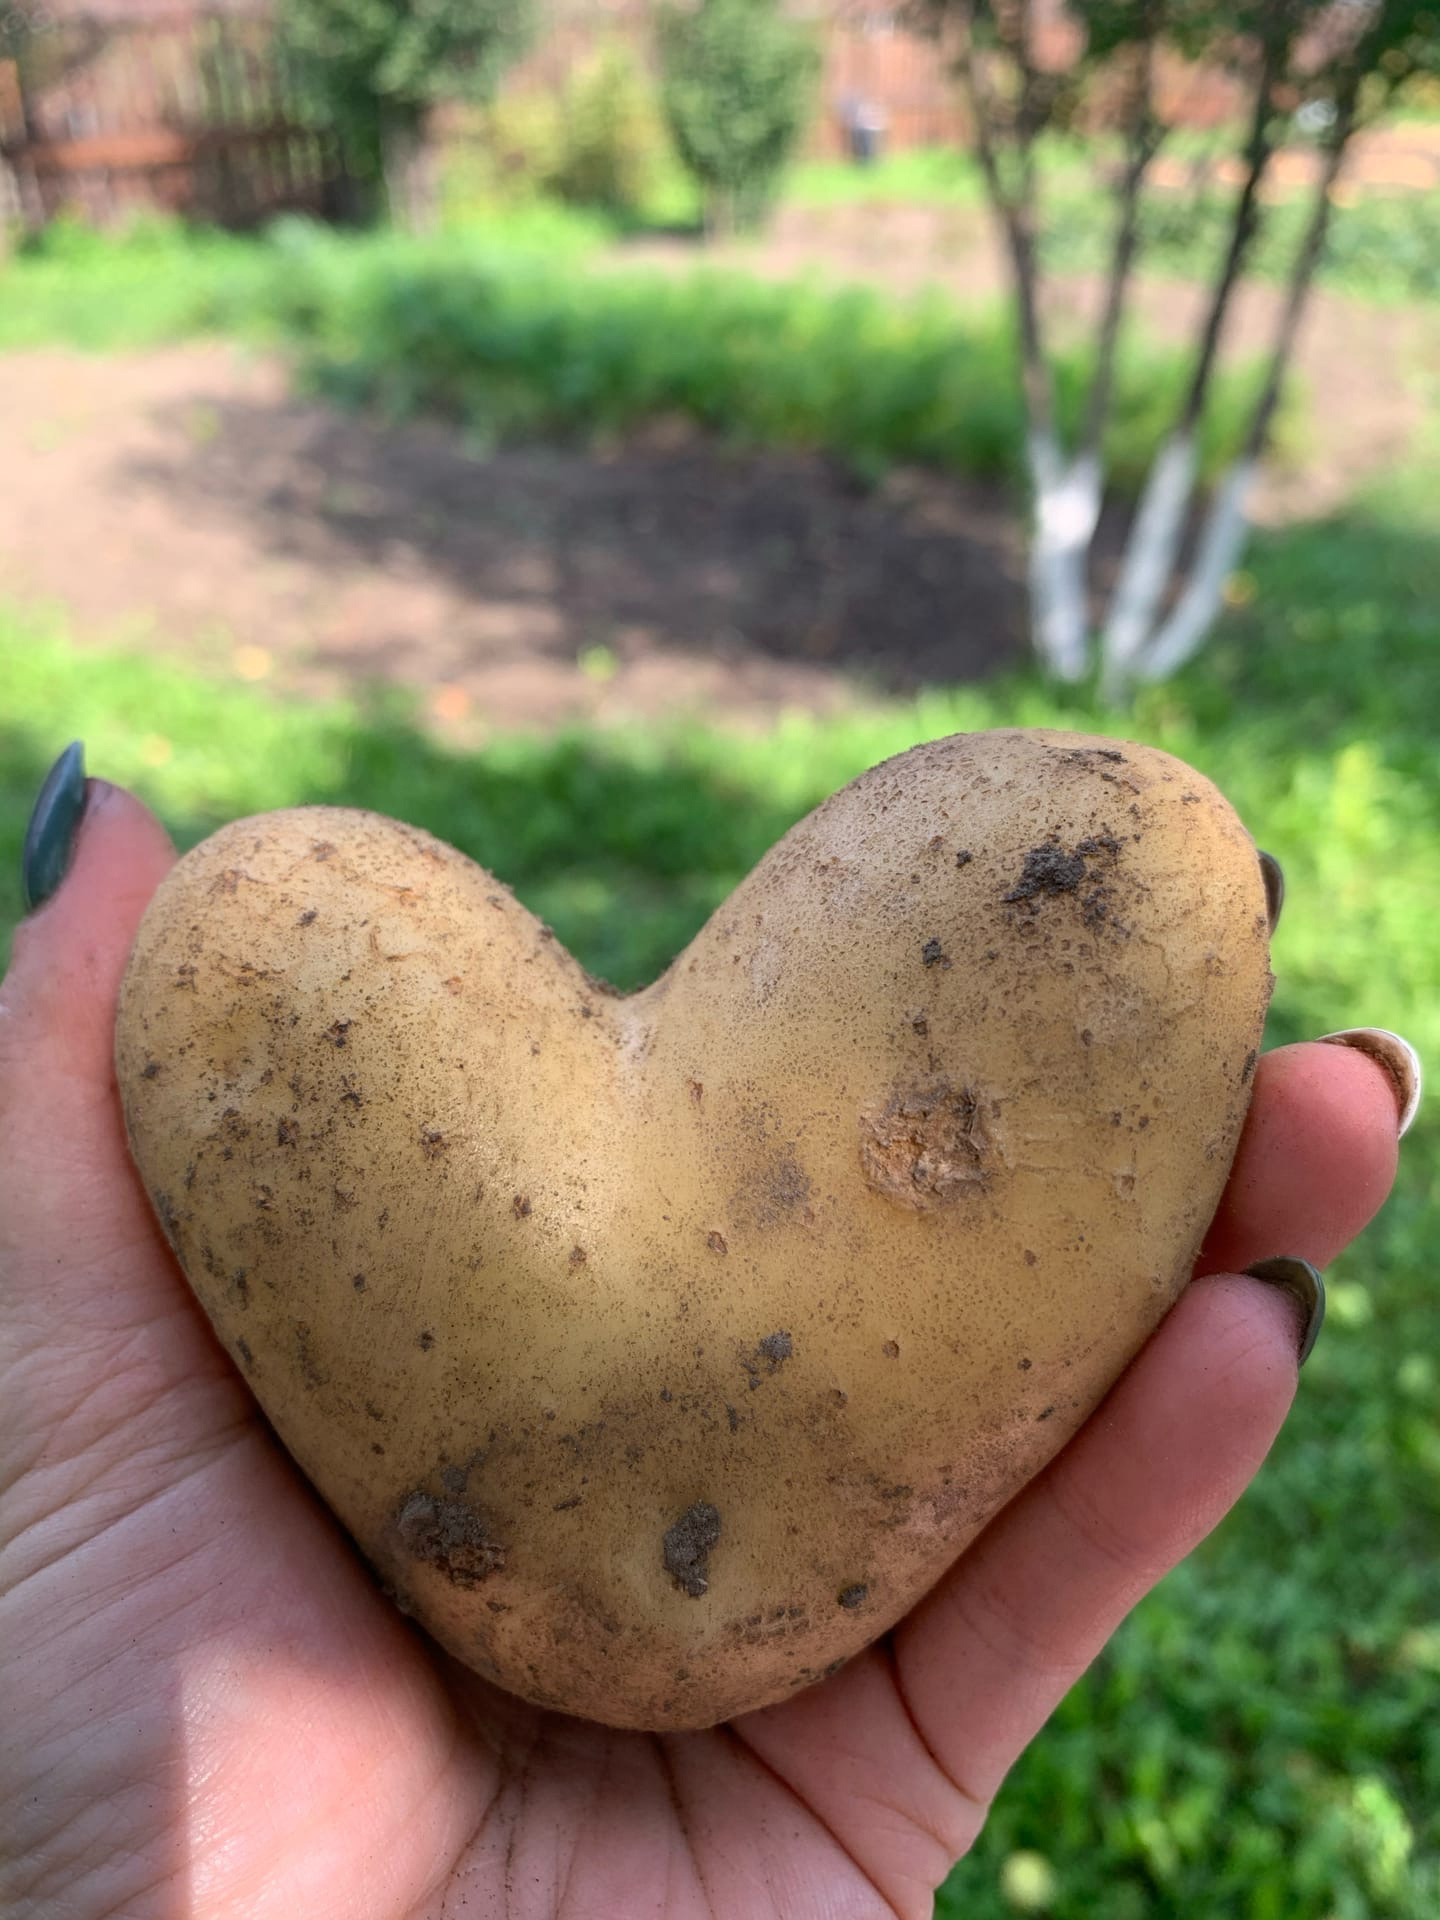 Посмотрите, какая любвеобильная картошка выросла у тюменки. Красота да и только